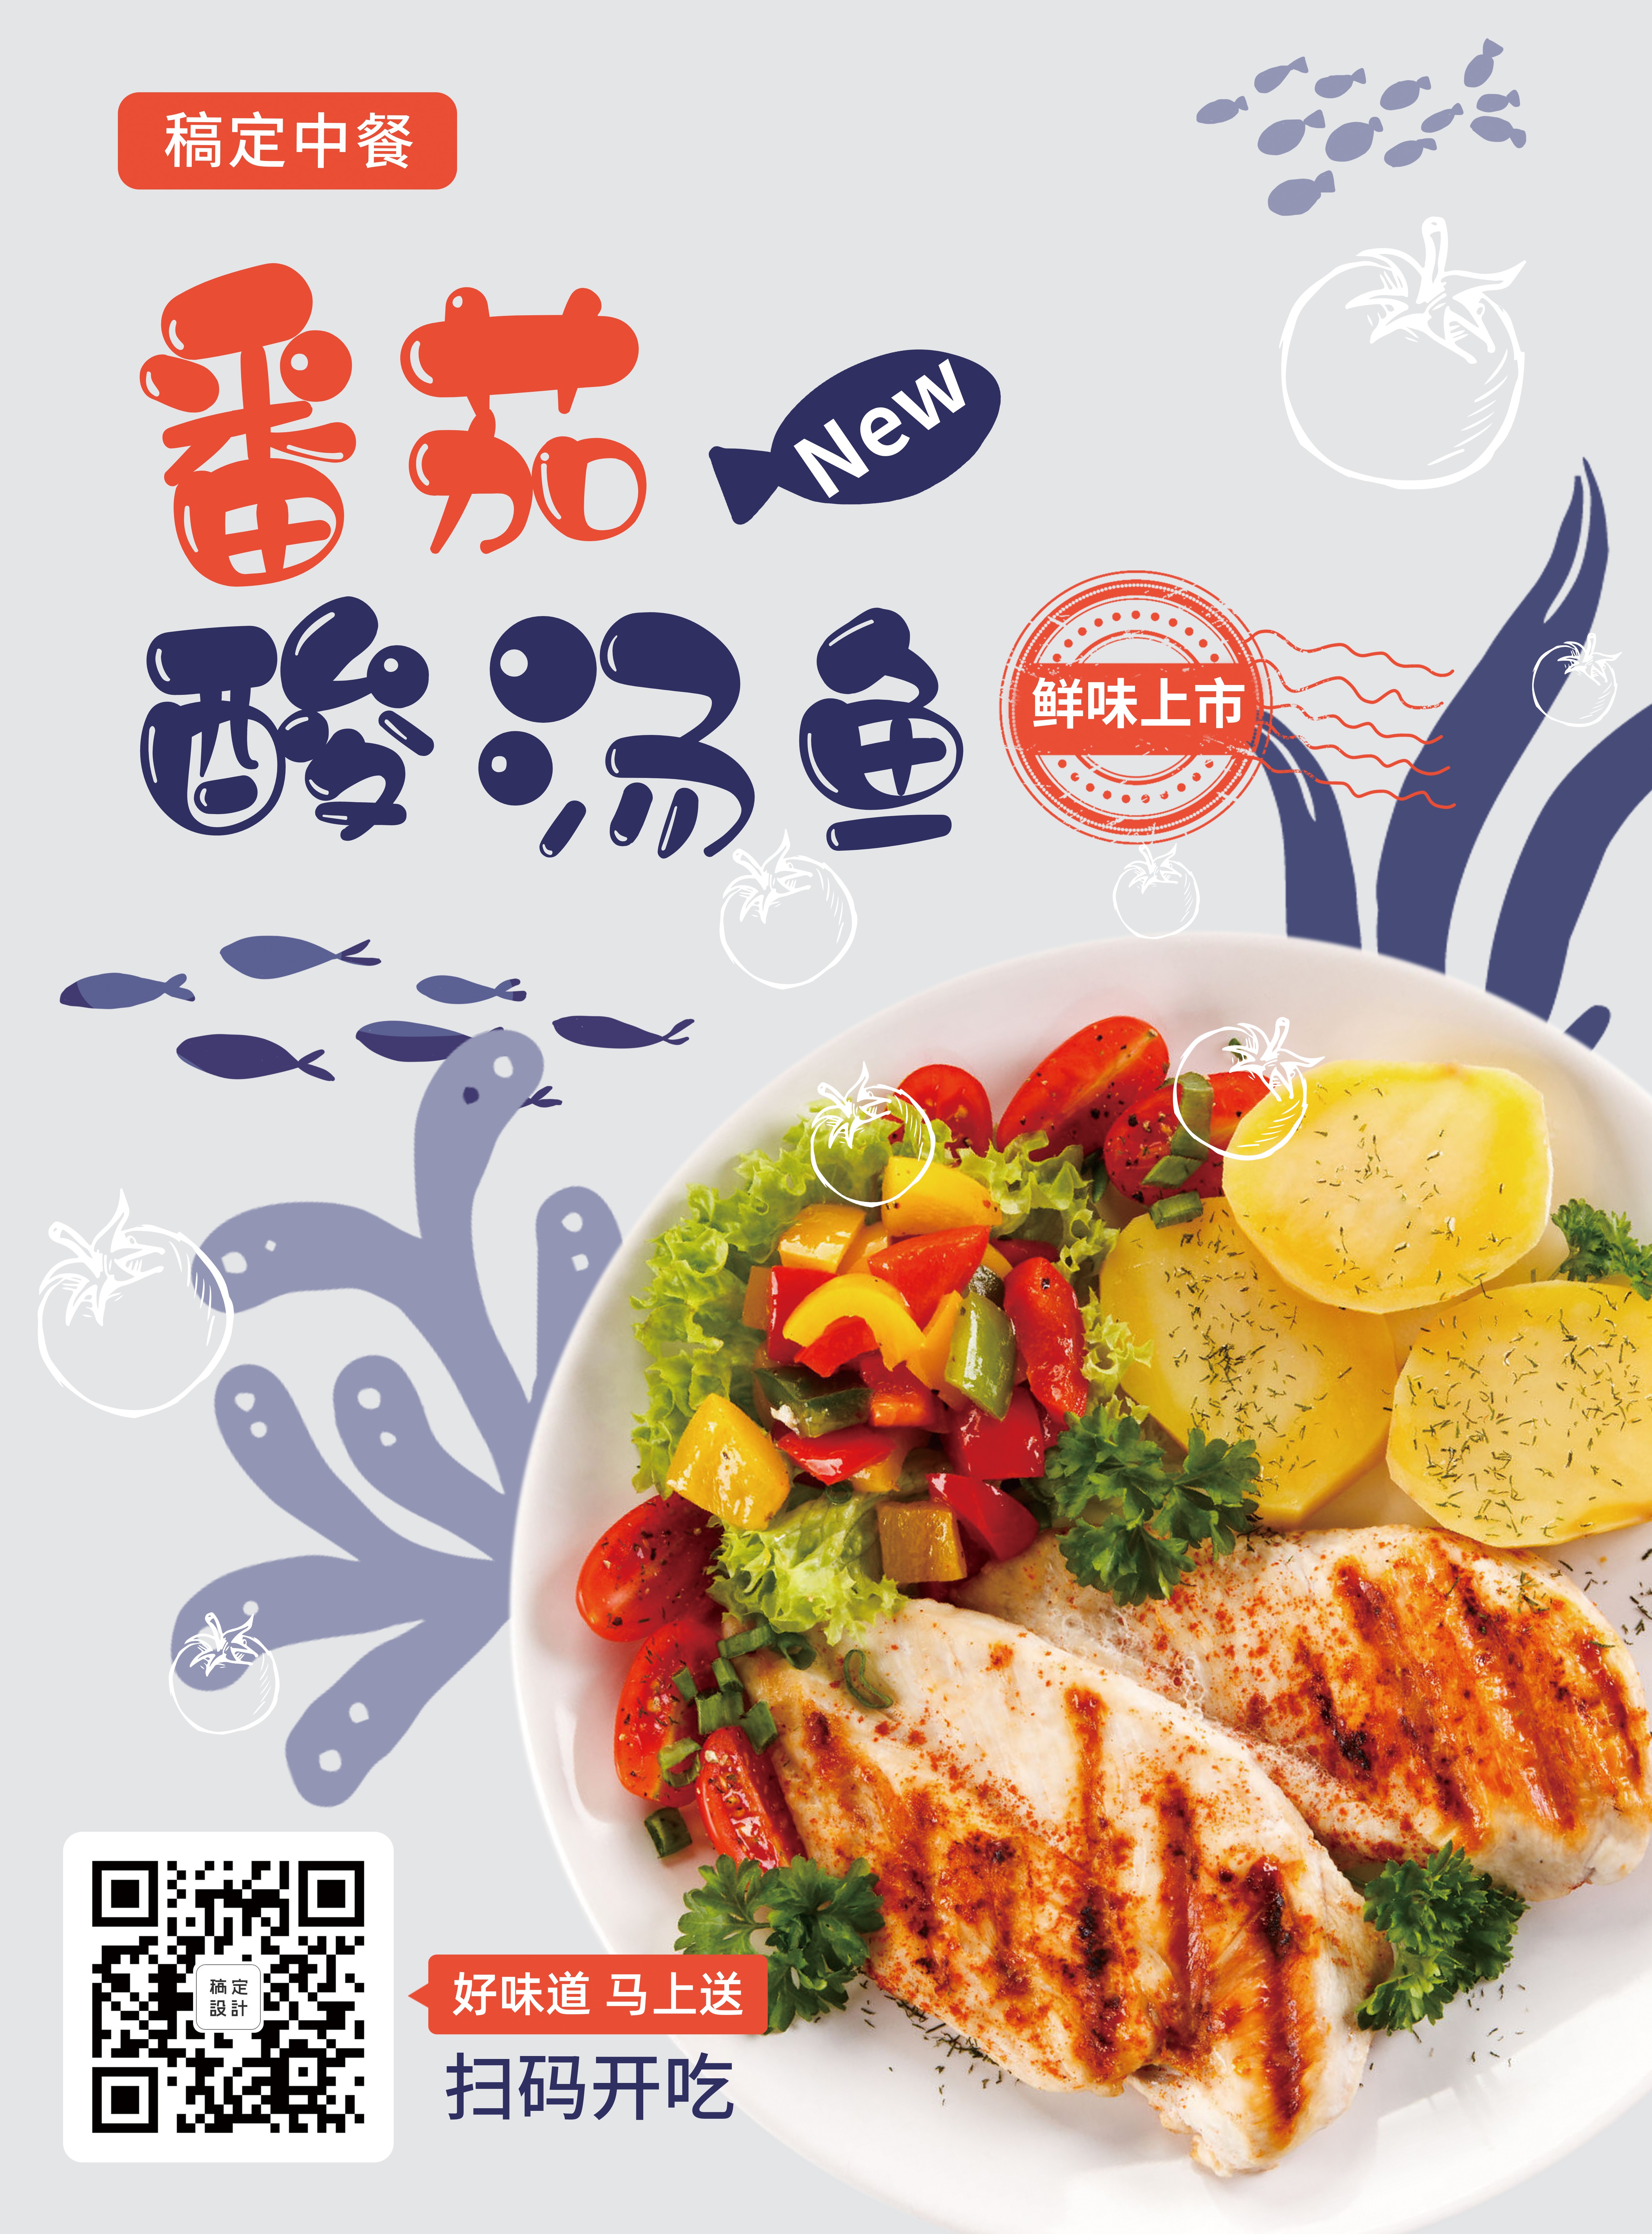 餐饮美食酸汤鱼新品上市简约张贴海报预览效果